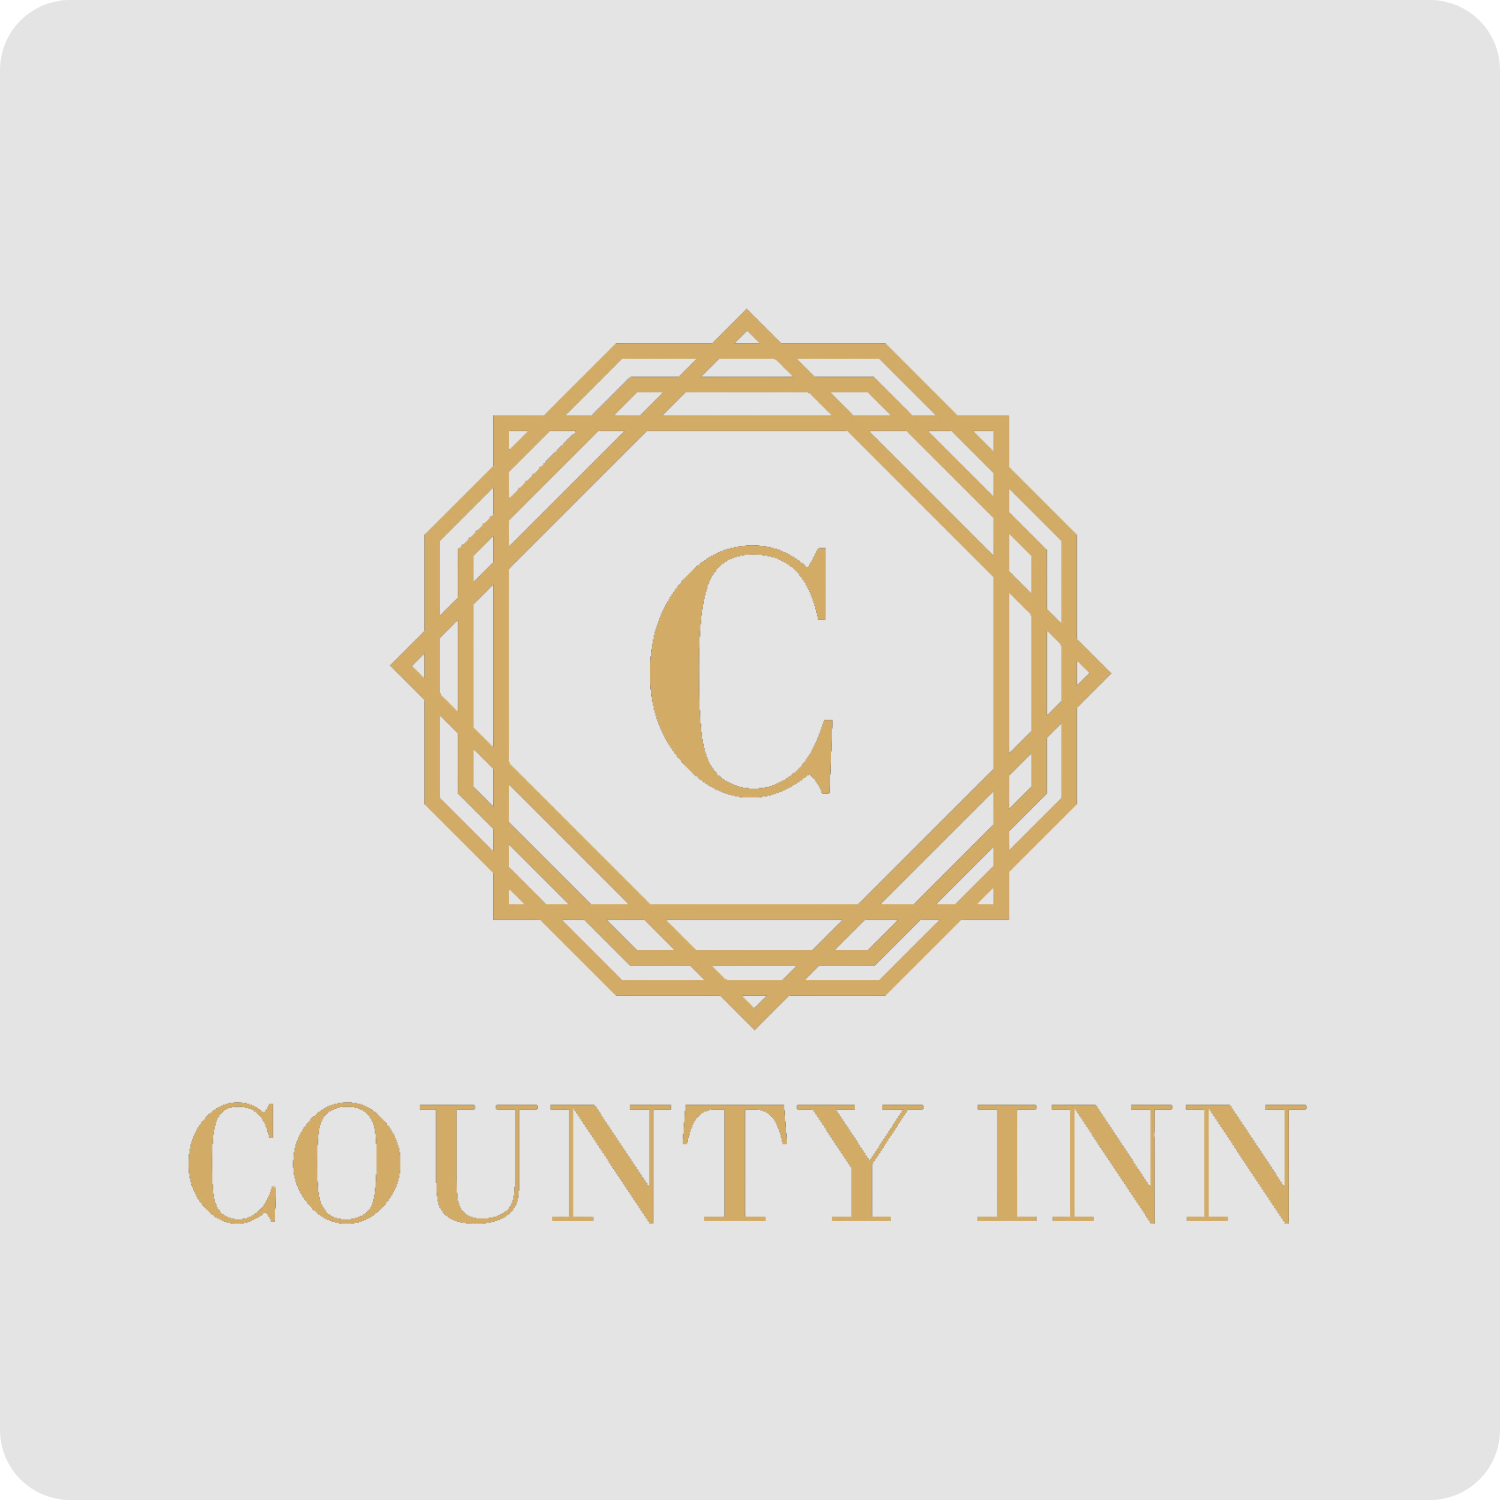 Agoan Client County Inn Logo